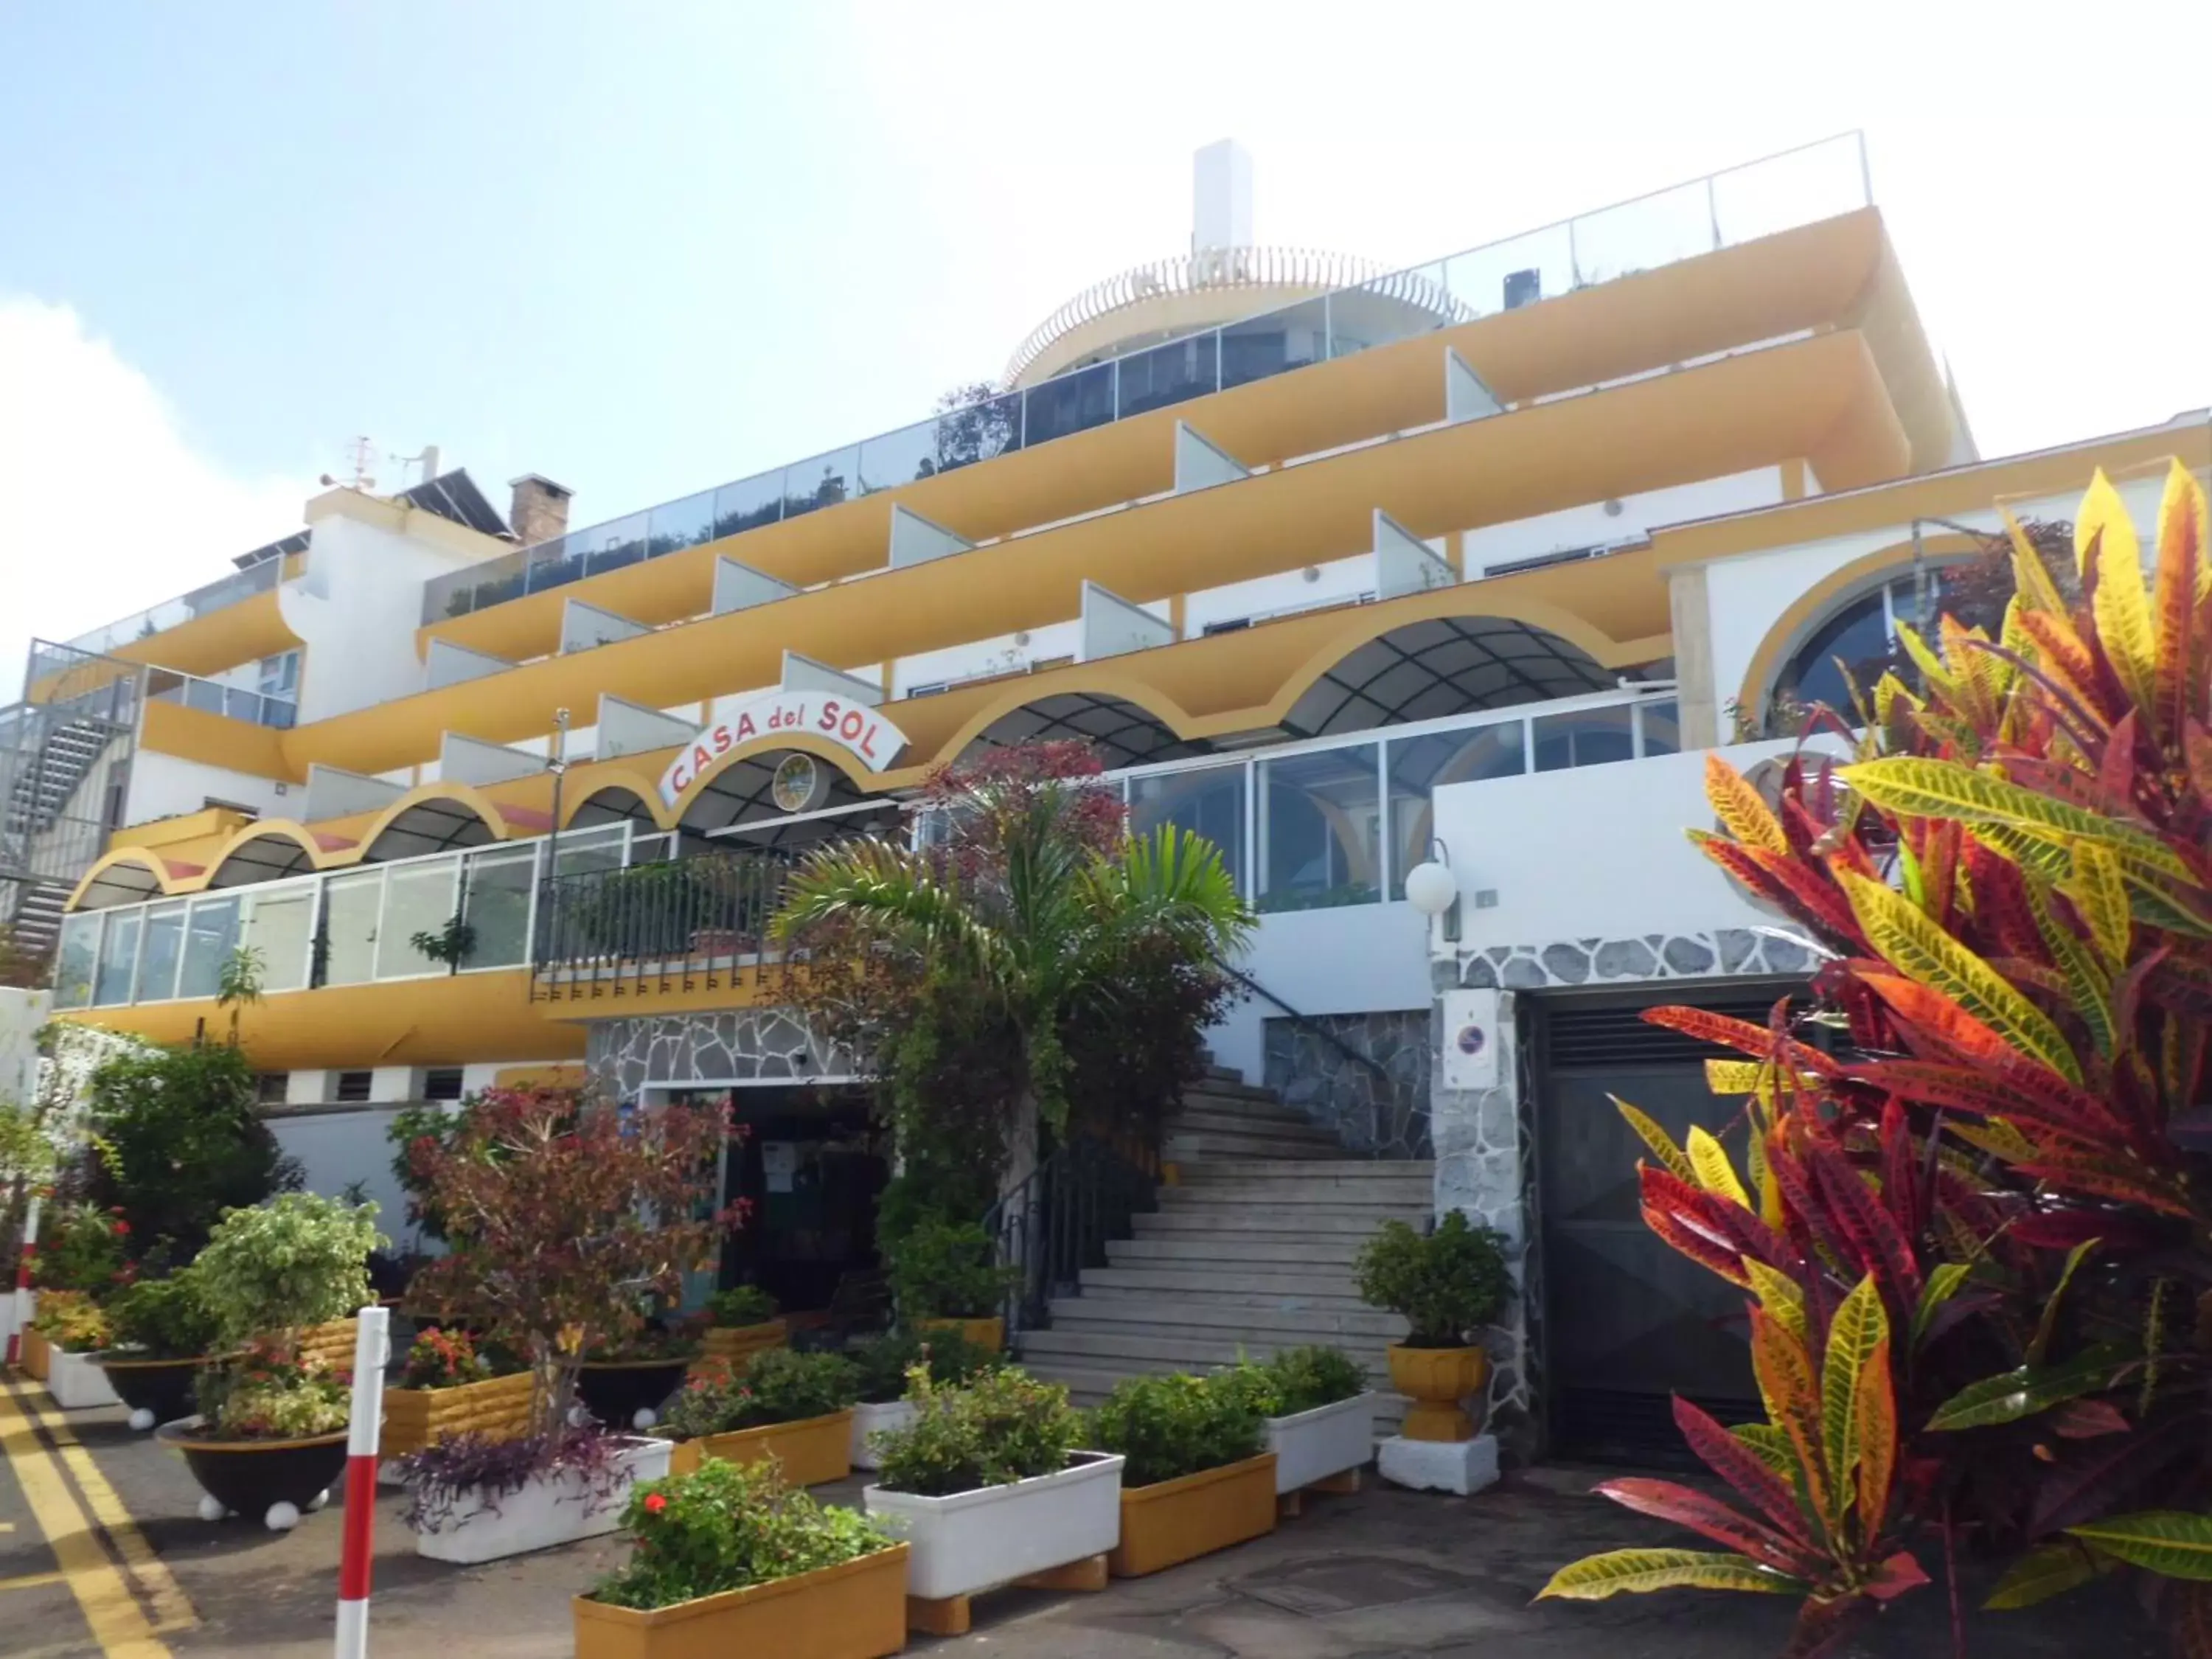 Facade/entrance, Property Building in Hotel Casa del Sol